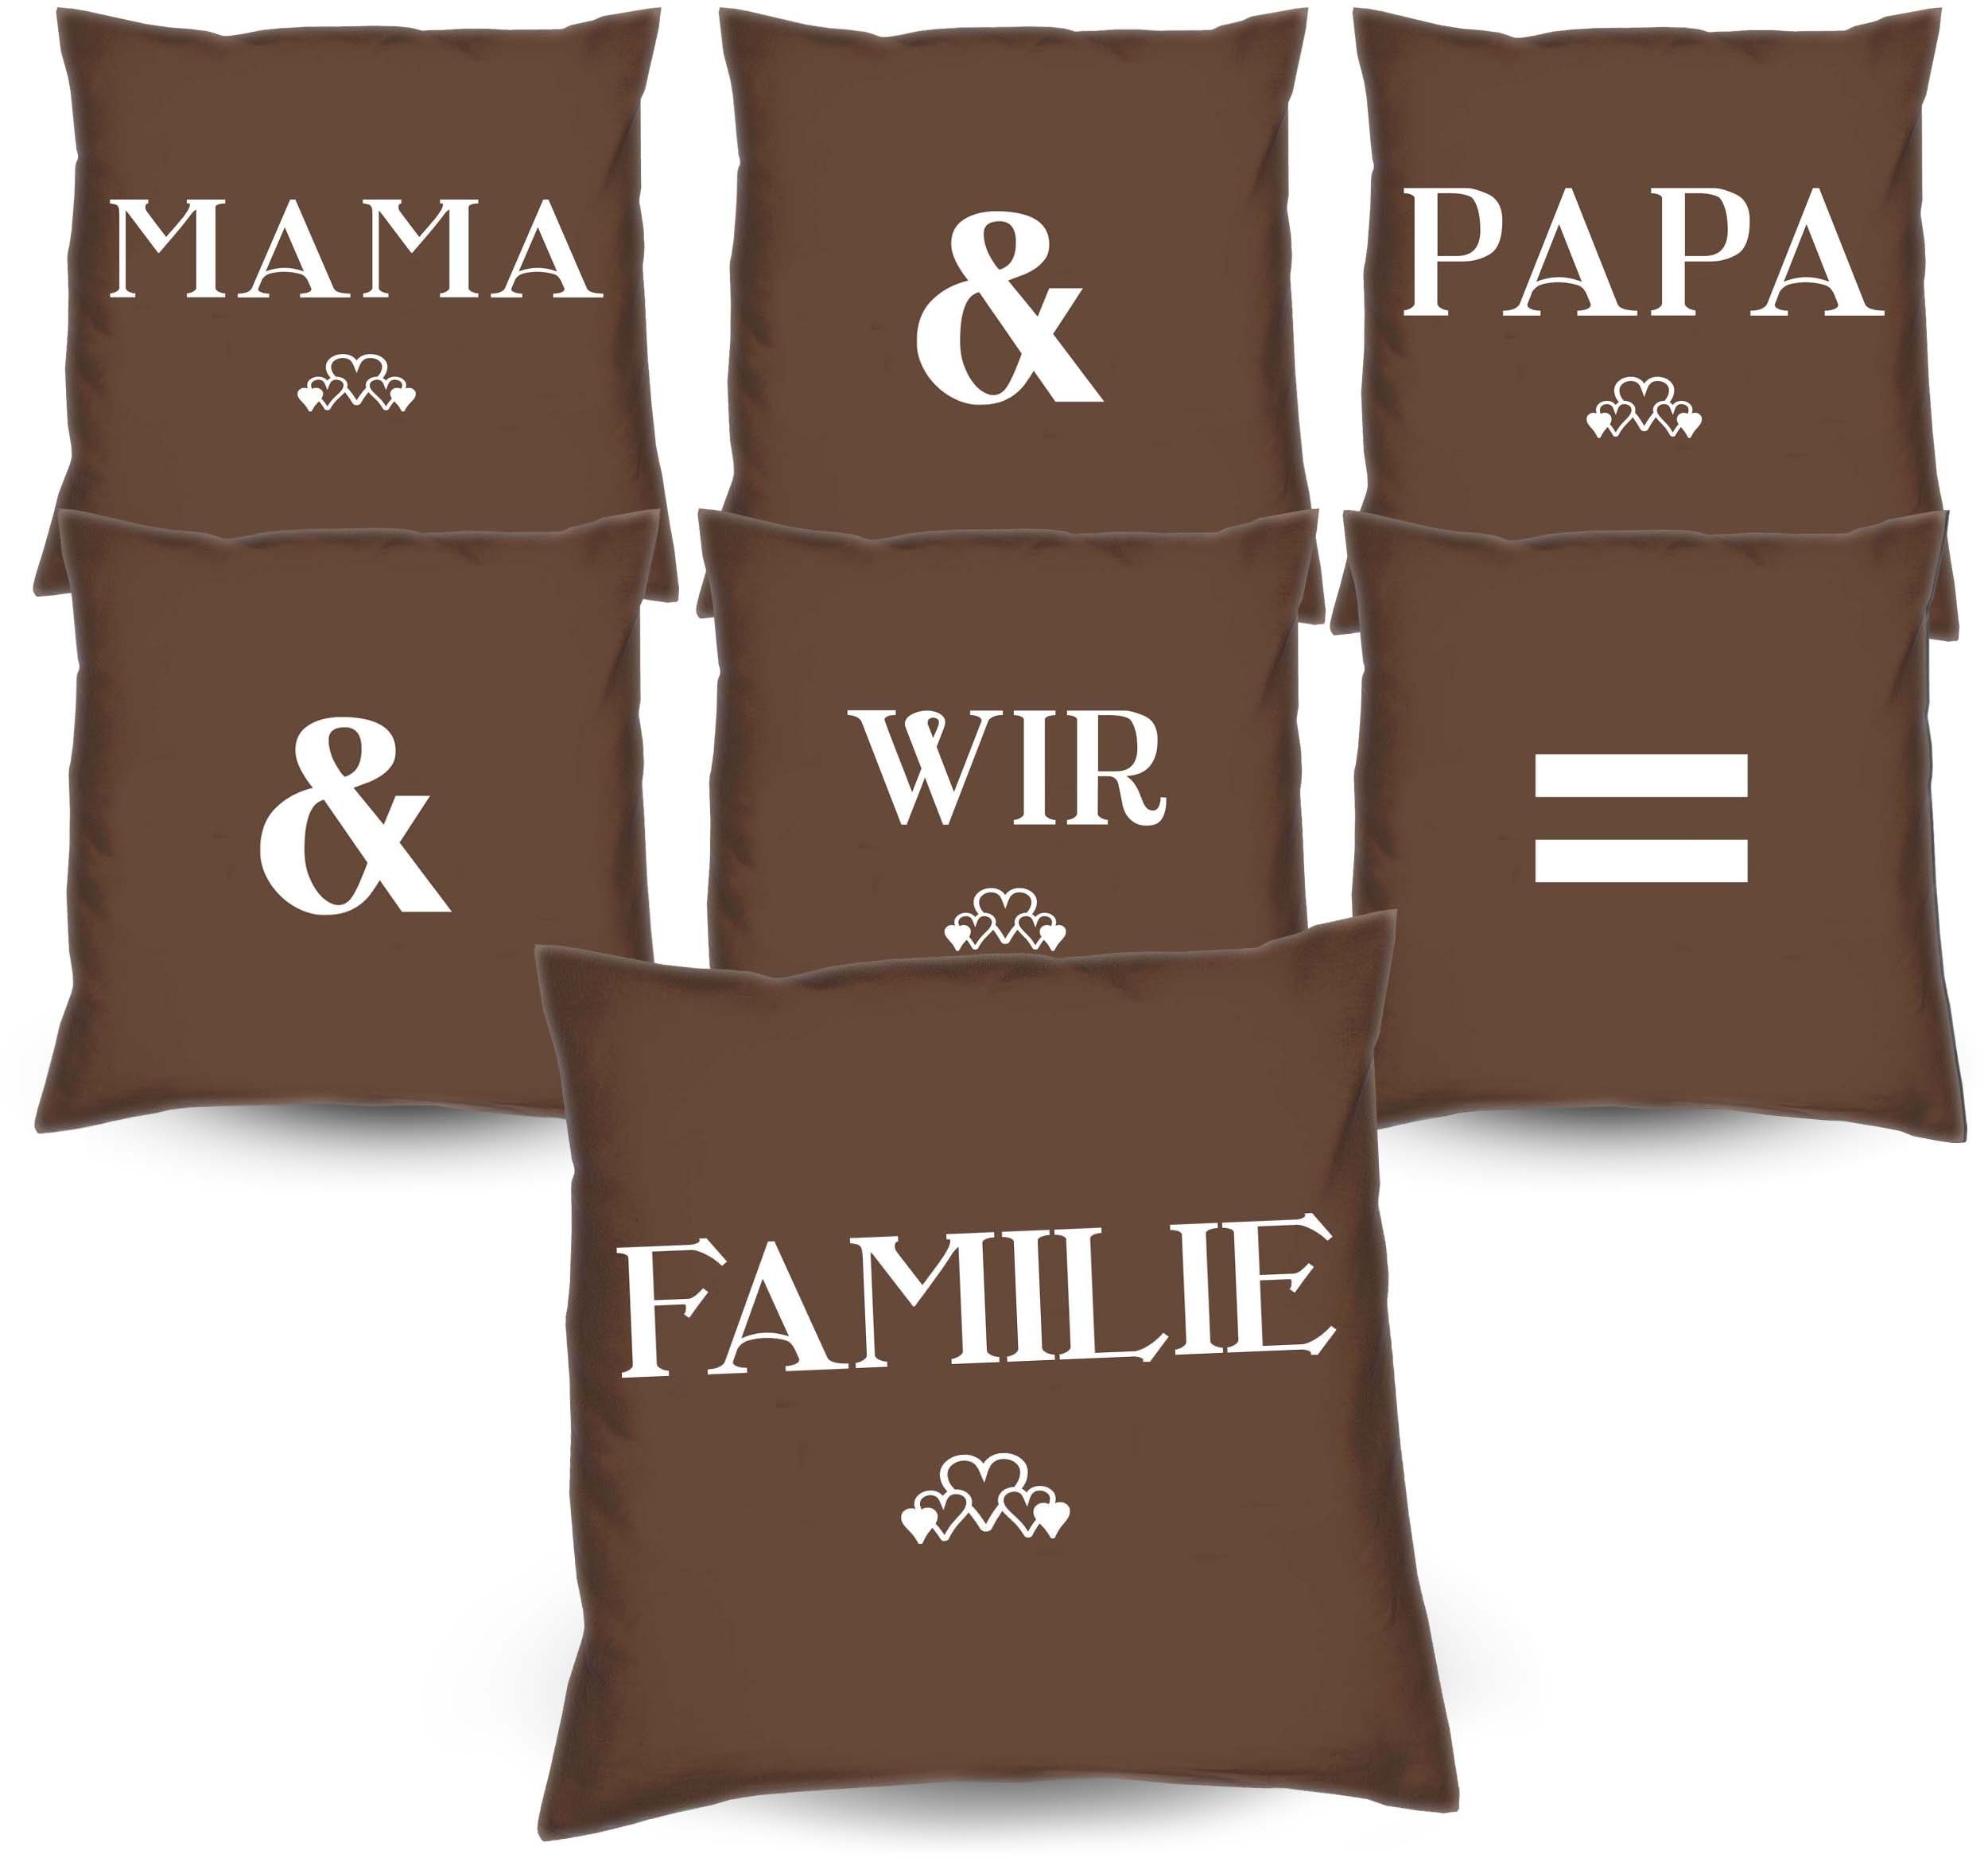 & Mama Kissen-Set Familie 7 & Dekokissen Weihnachtsgeschenke, Kissen = Papa Eltern wir Soreso®